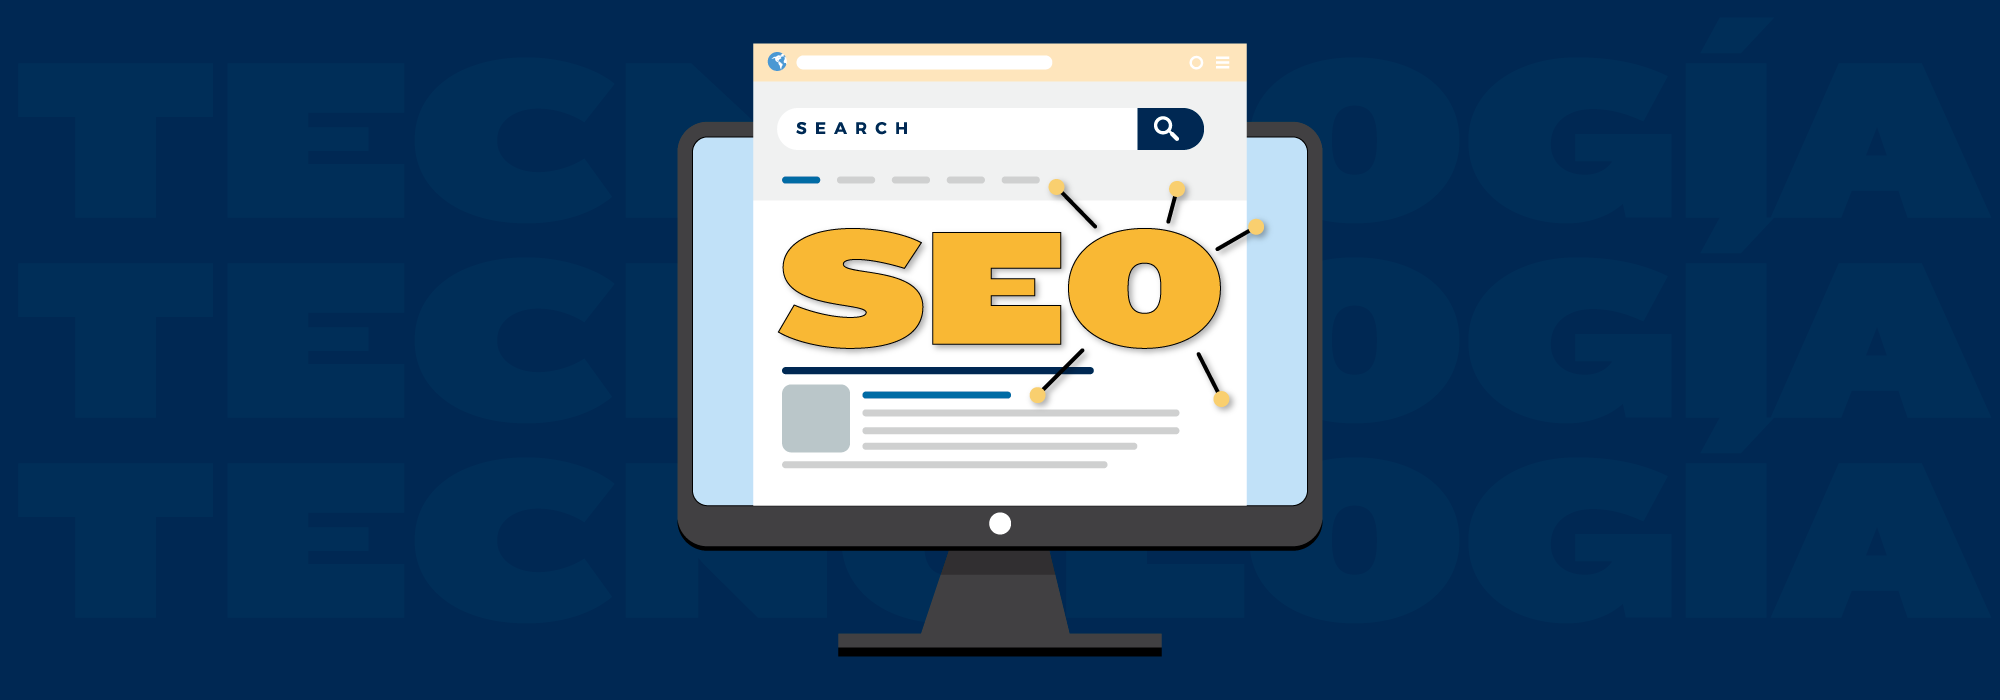 Estrategias clave para mejorar tu visibilidad en los motores de búsqueda y atraer más tráfico cualificado a tu sitio web a través del SEO.